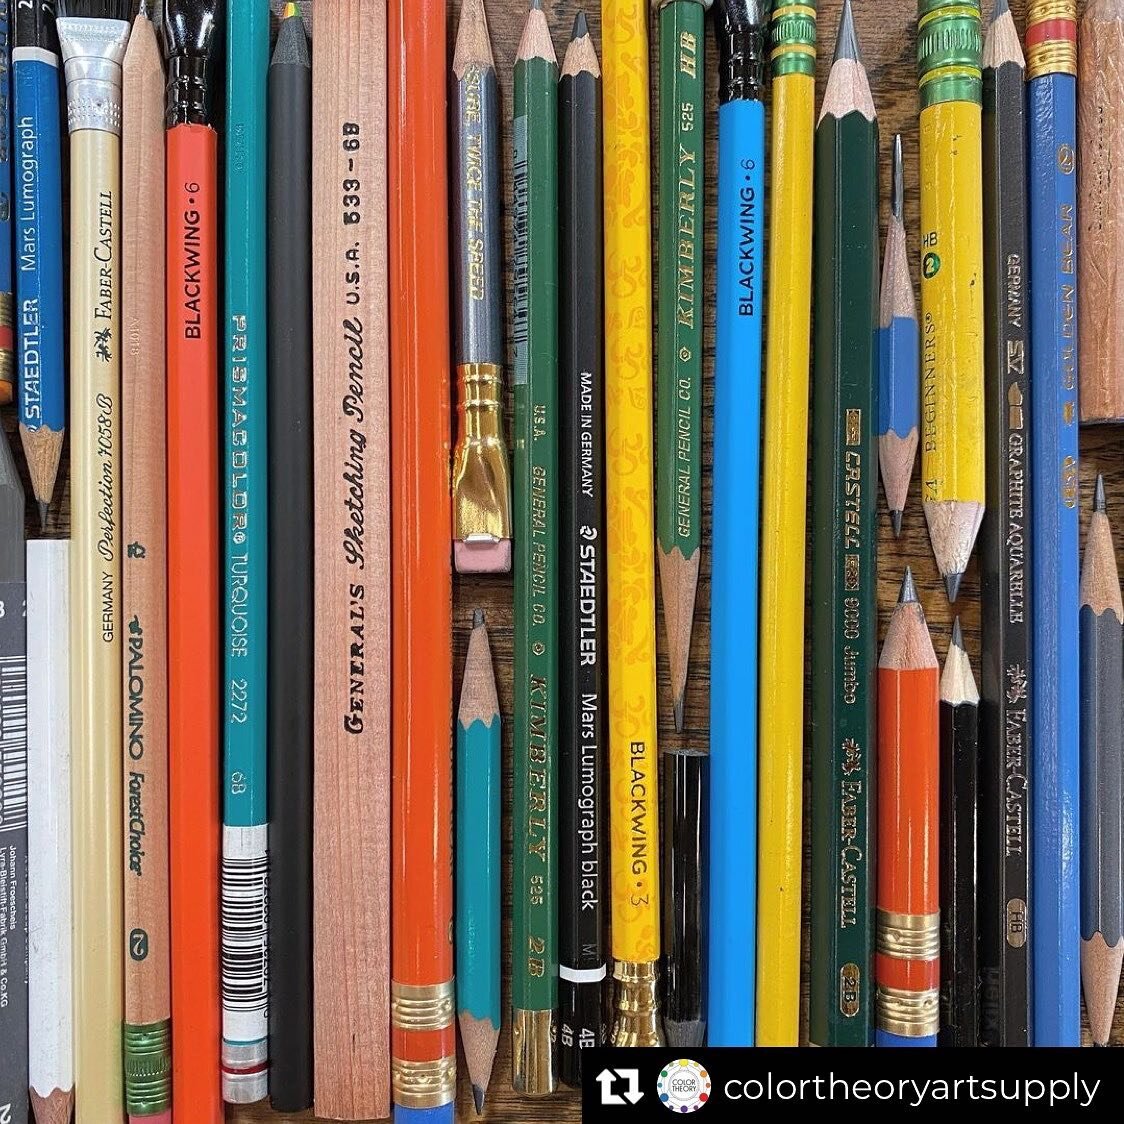 Pencils!
#toolsofthetrade #pencilsaremyfriends #pencilsharpener